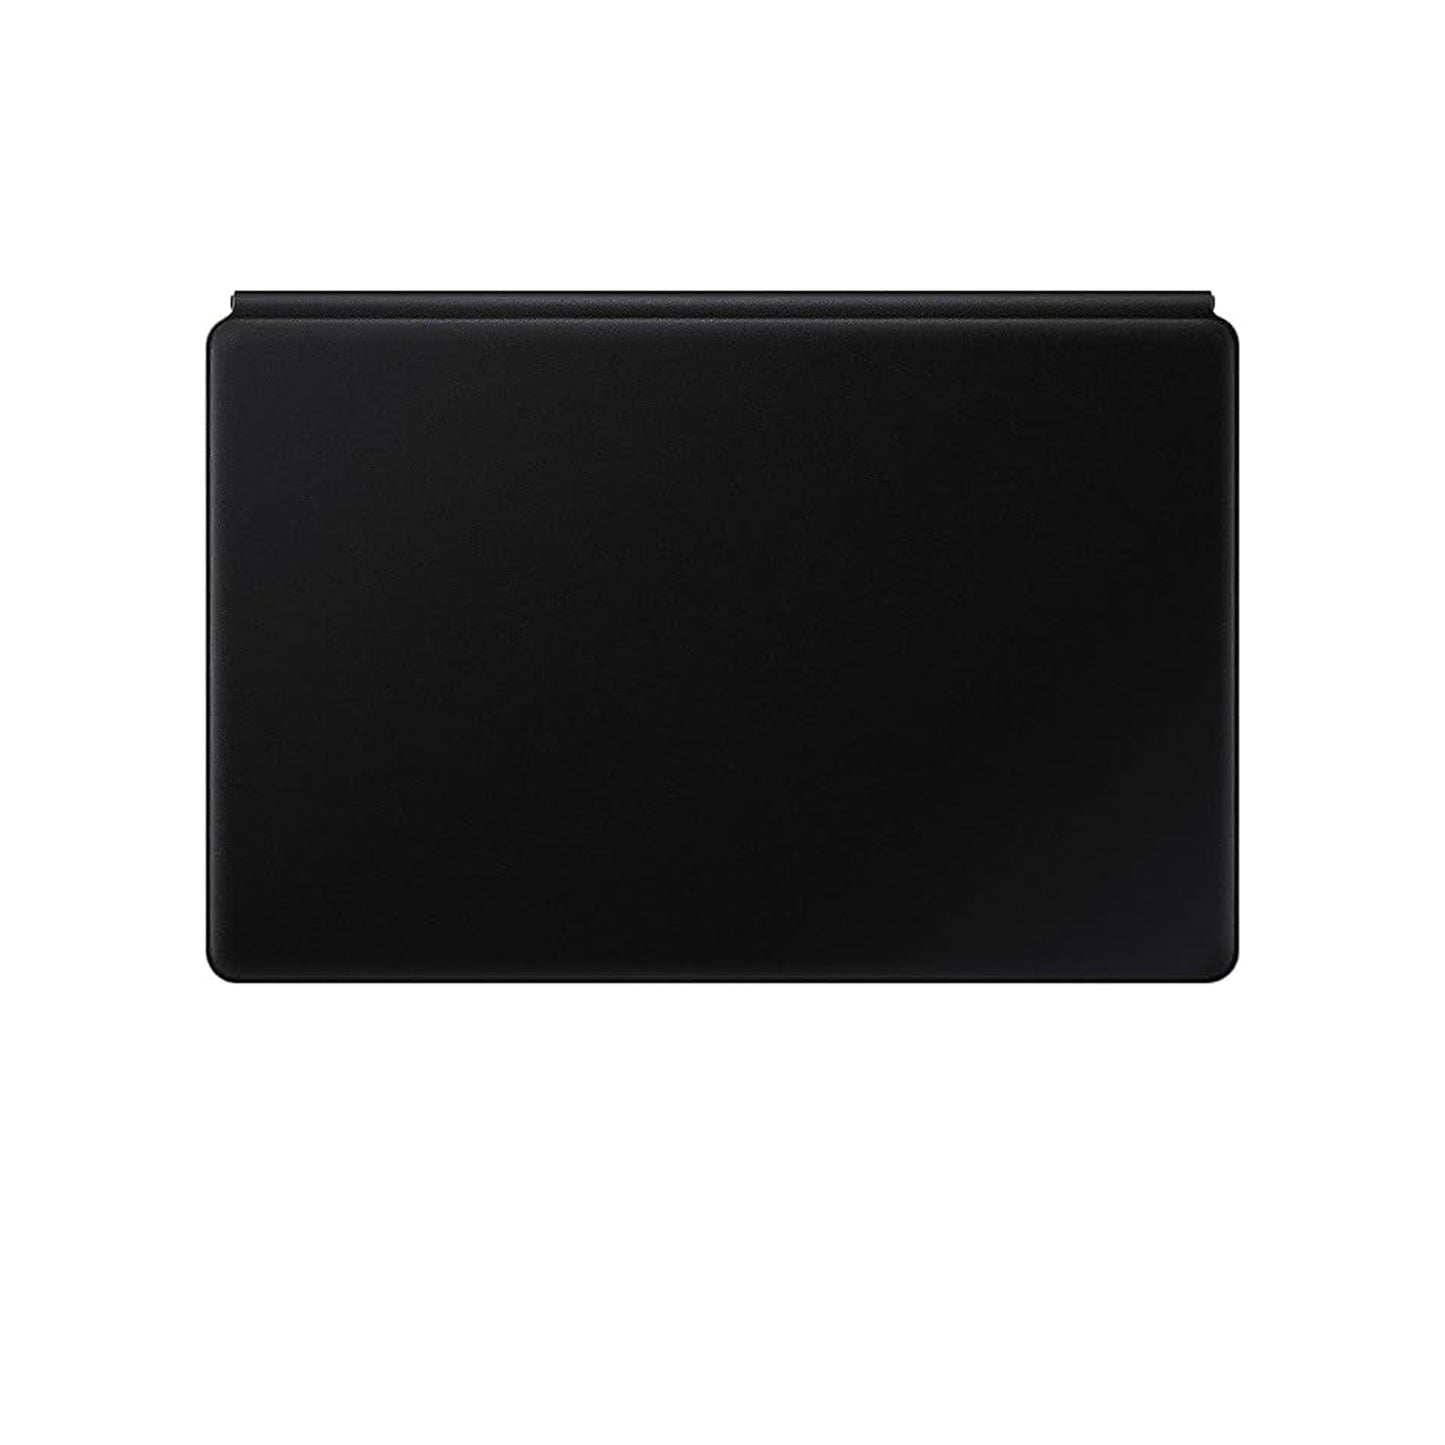 سامسونج جالاكسي تاب S7+ لوحة المفاتيح، أسود 